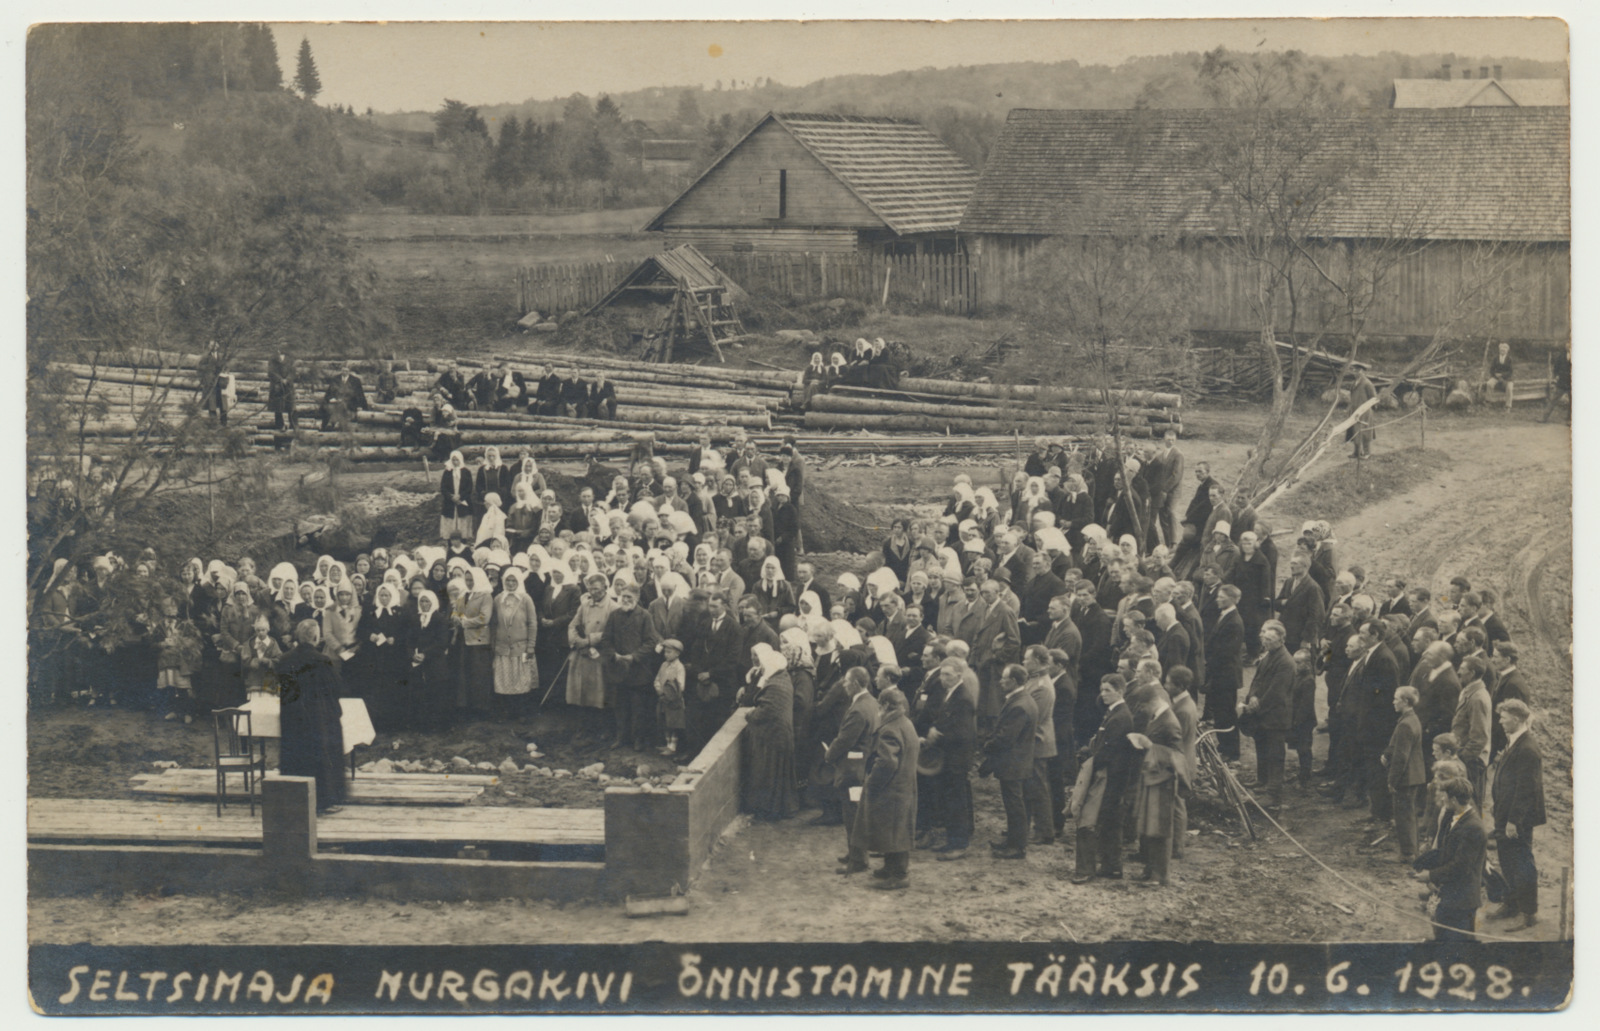 foto, Suure-Jaani khk, Tääksi, seltsimaja nurgakivi õnnistamine, 1928